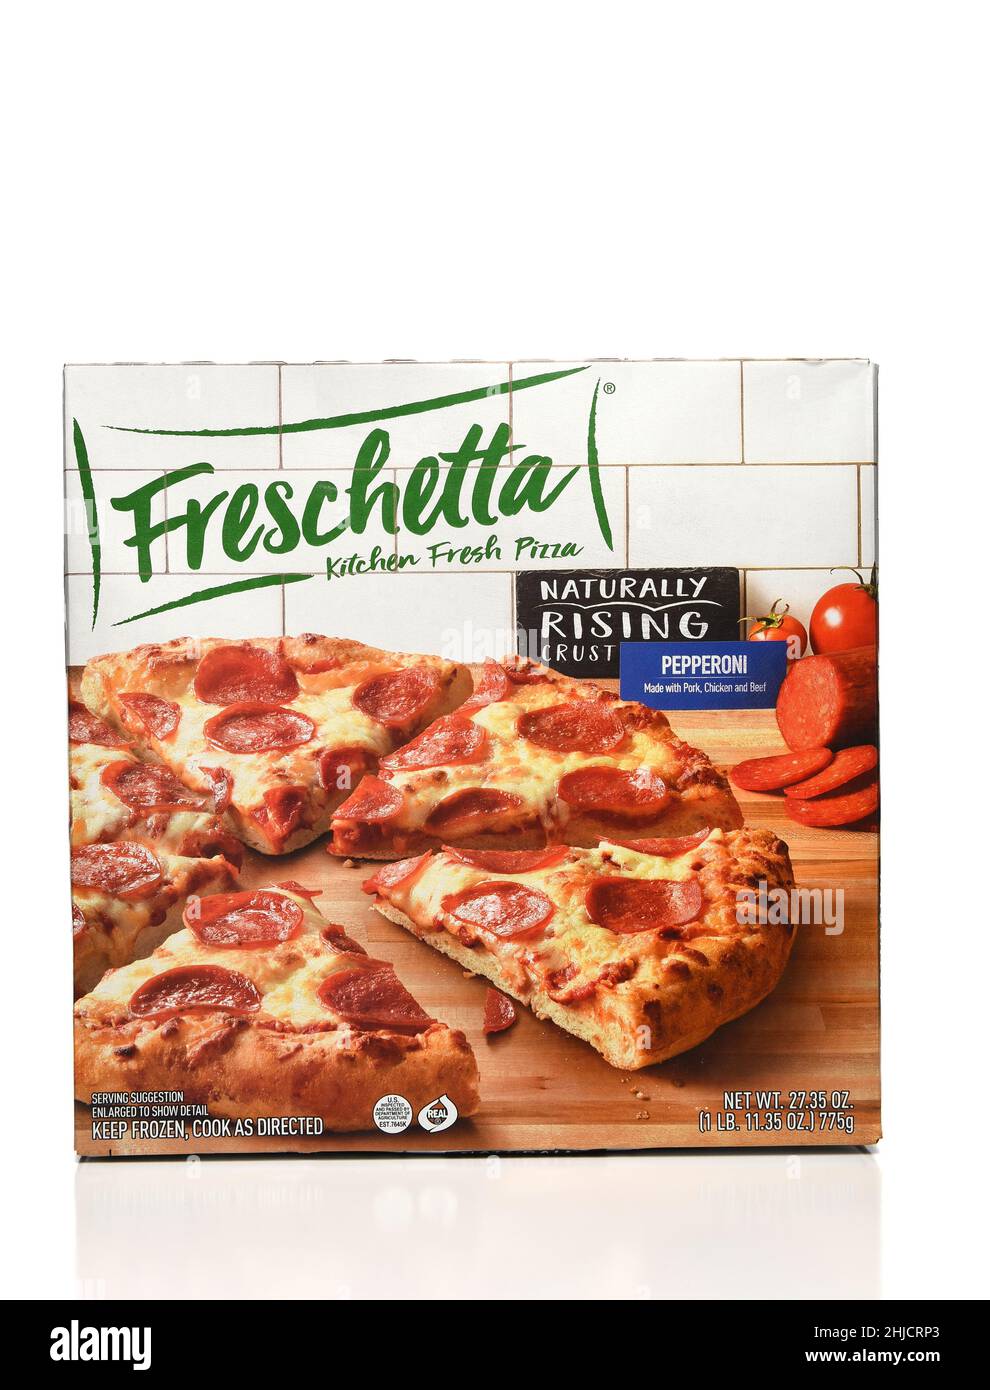 IRVINE, KALIFORNIEN - 27. JAN 2022: Eine Schachtel Freschetta Kitchen Fresh Frozen Pepperoni Pizza. Stockfoto